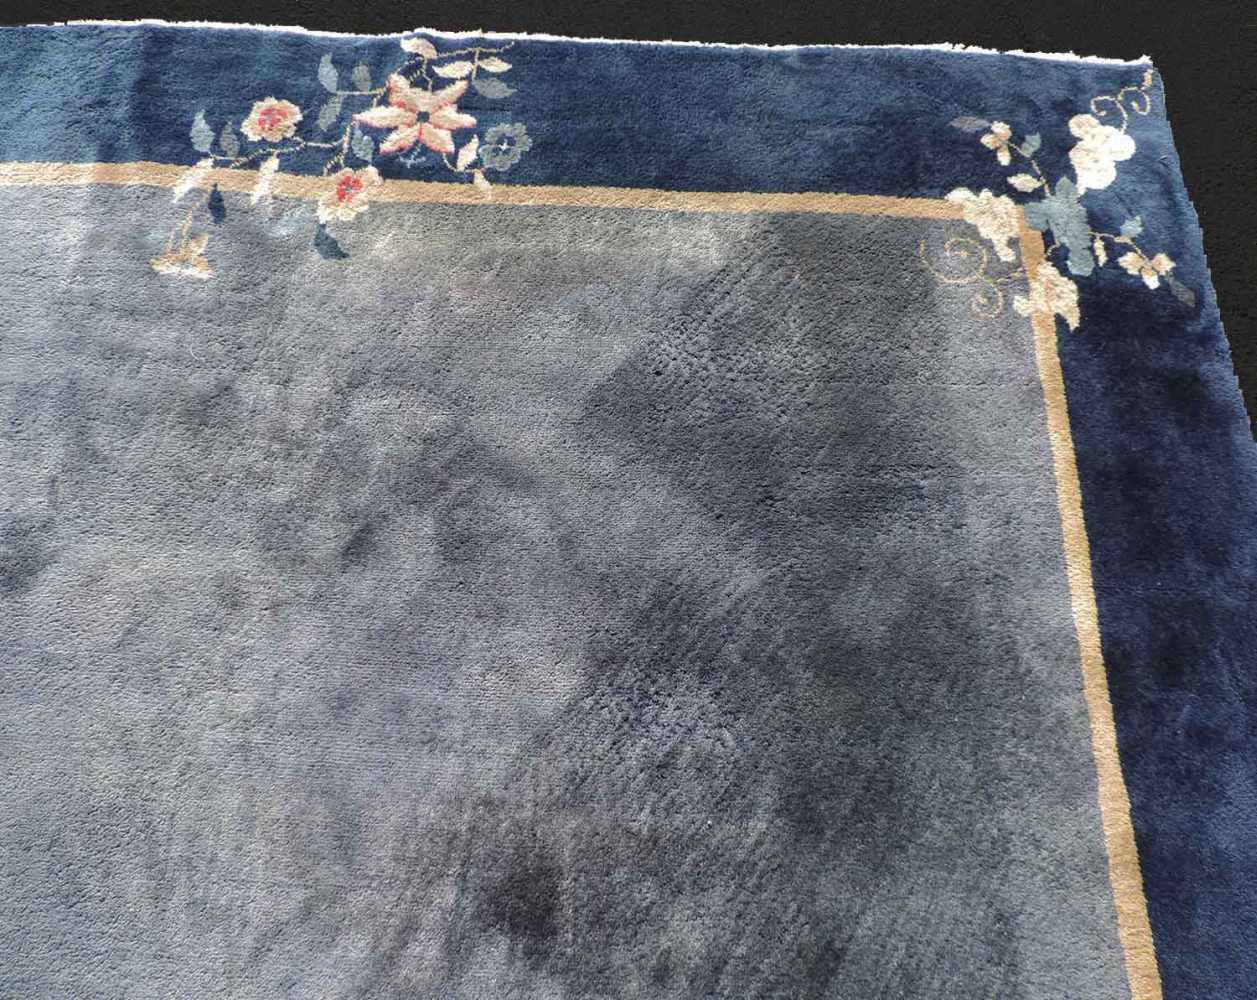 Peking Teppich. China. Antik. Um 1920 361 cm x 267 cm. Handgeknüpft. Mancesterwolle auf Baumwolle. - Image 5 of 8